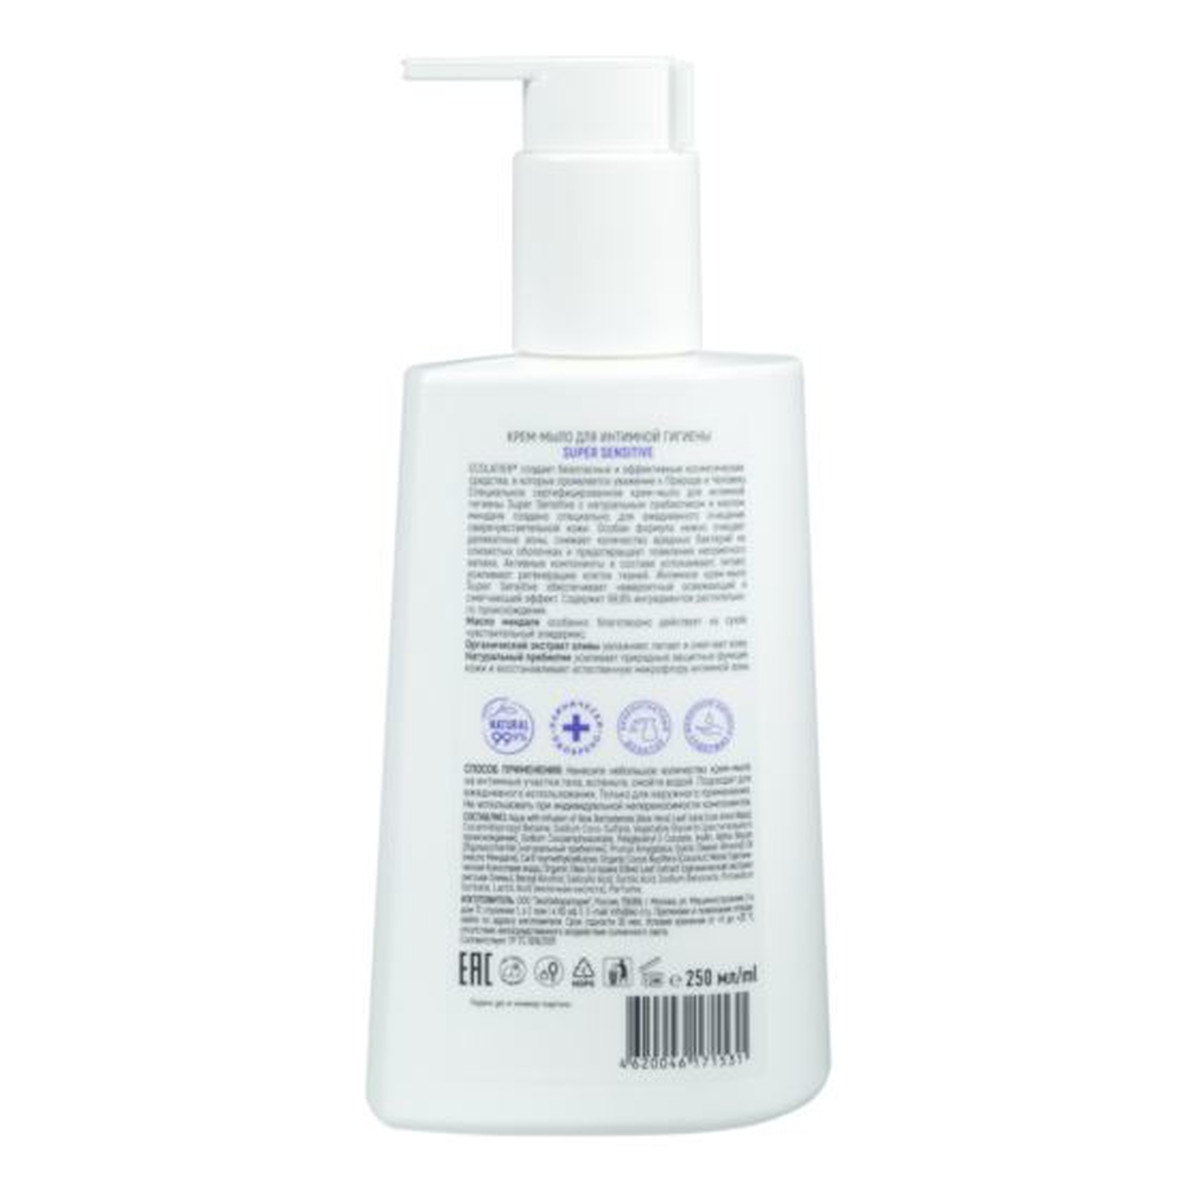 Ecolatier Super Sensitive Krem-mydło do higieny intymnej pH 4,7 Probiotyk kwas mlekowy 250ml